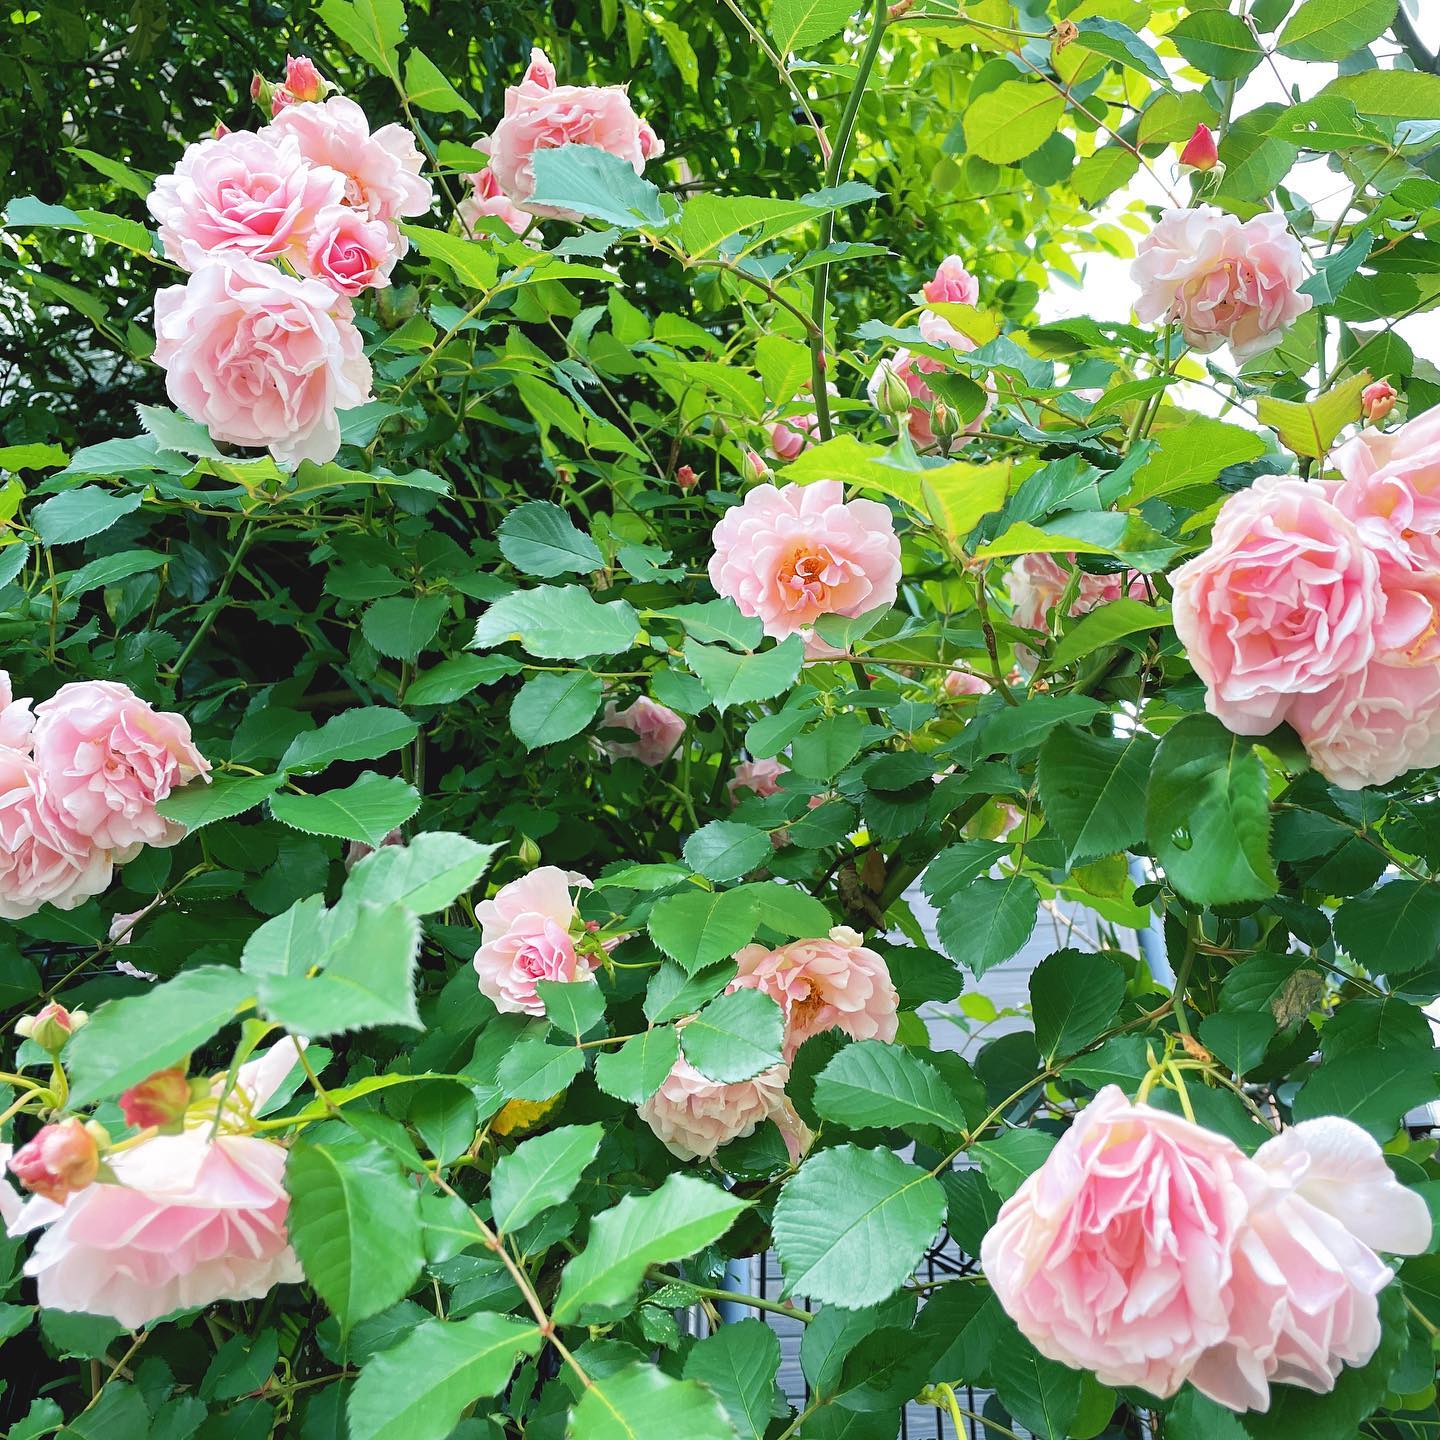 昨日のですが…祭りになりました。甘い香りがほのかに #roses #gardening #floweroftheday #ガーデニング #バラ #はなまっぷ